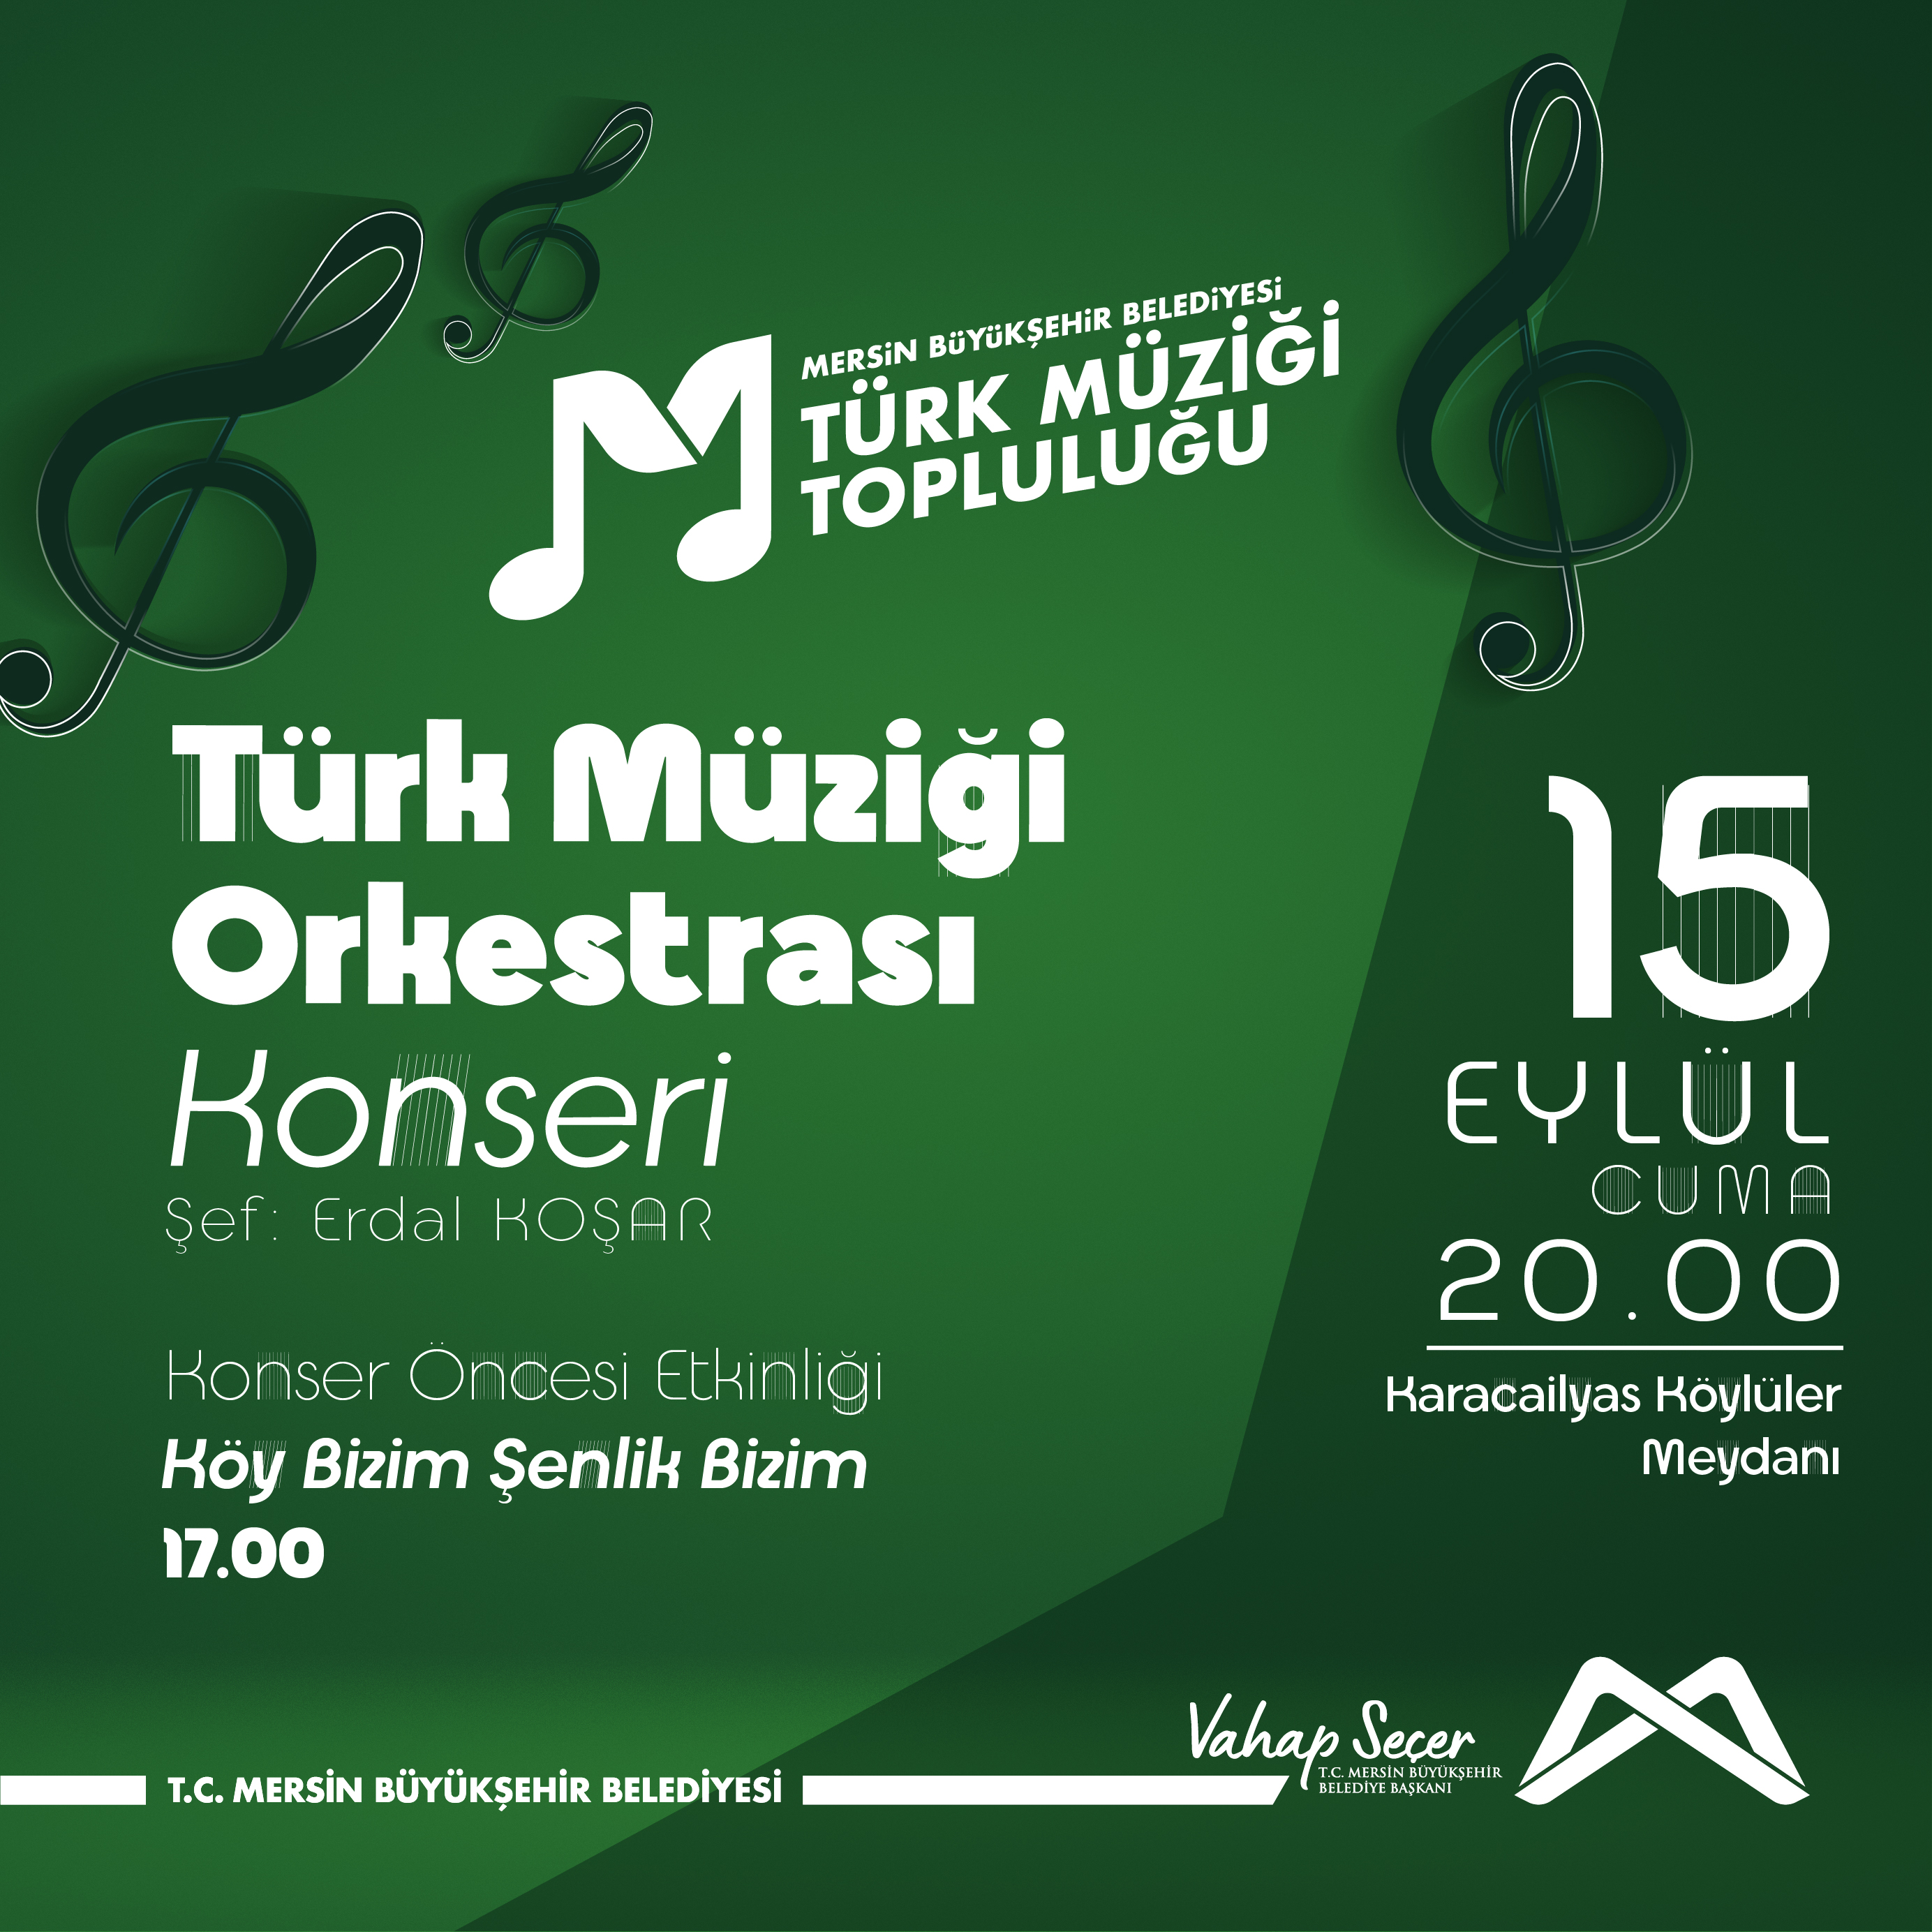 Türk Müziği Orkestrası Konseri'nde buluşalım!